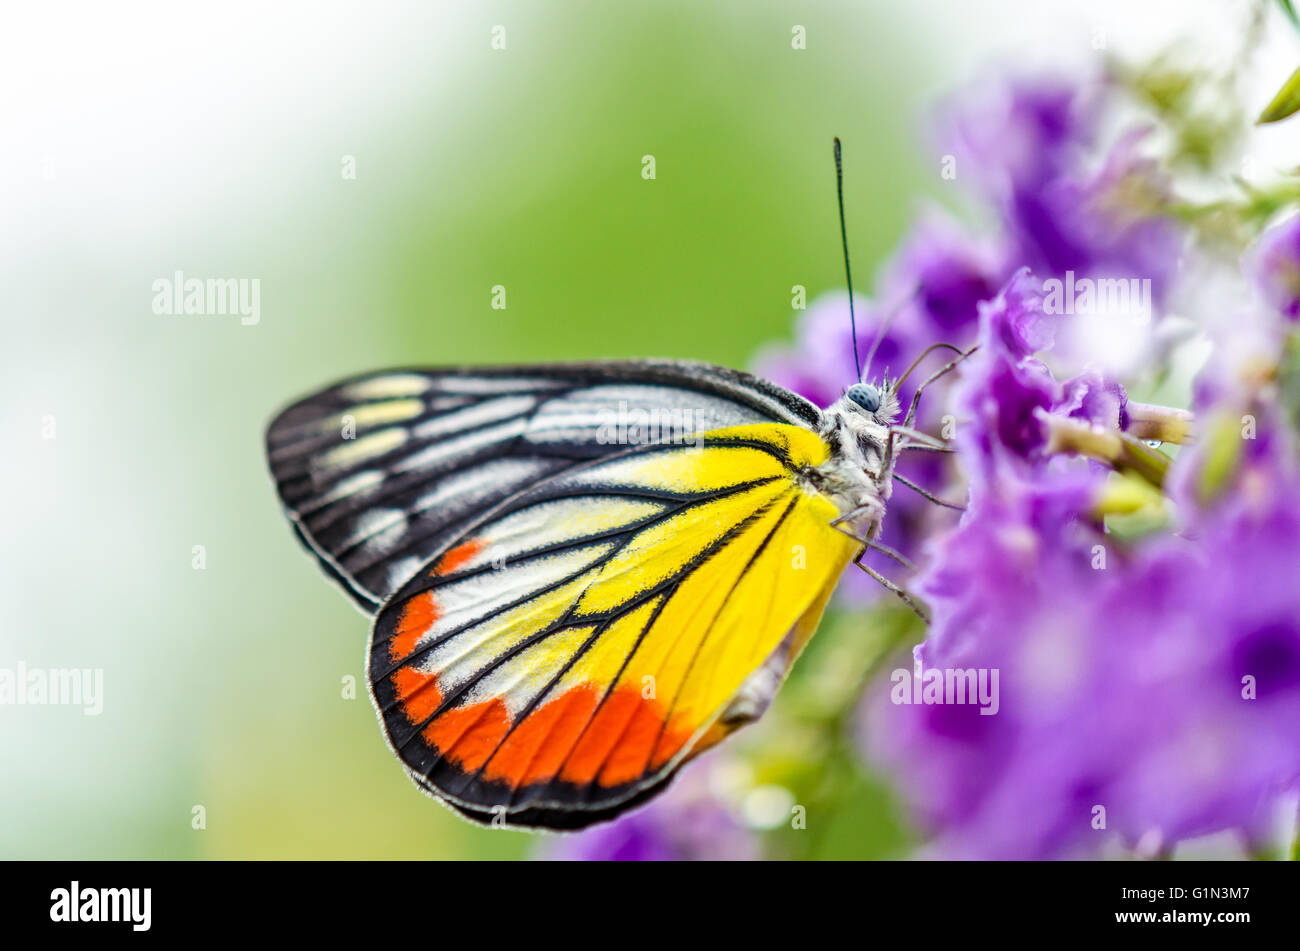 Dipinto di Jezebel (Delias hyparete) farfalla colorata di bianco e giallo arancio strisce nere, è in cerca di nettare su viola f Foto Stock